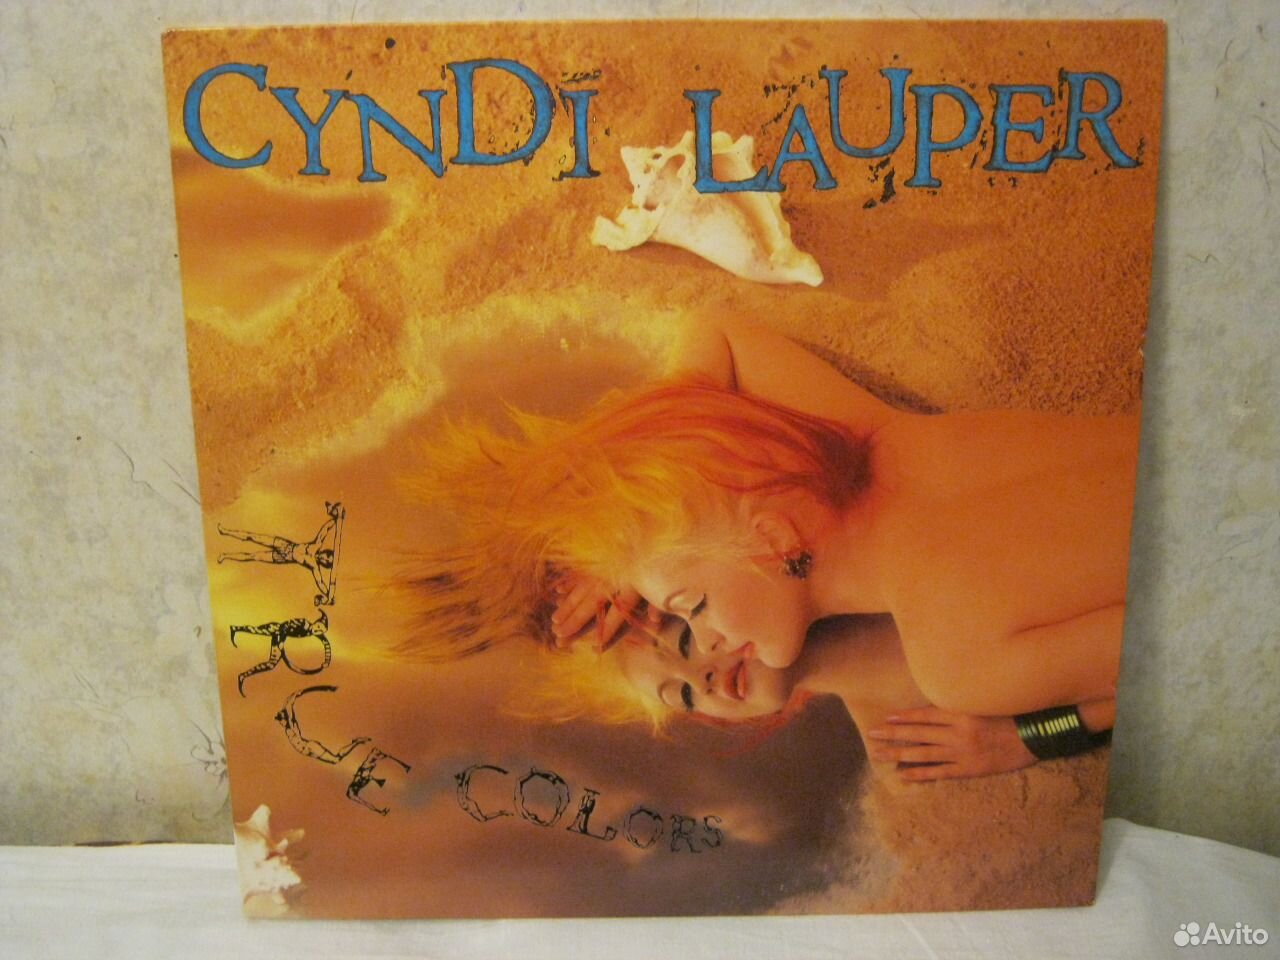 Cyndi Lauper Naked.